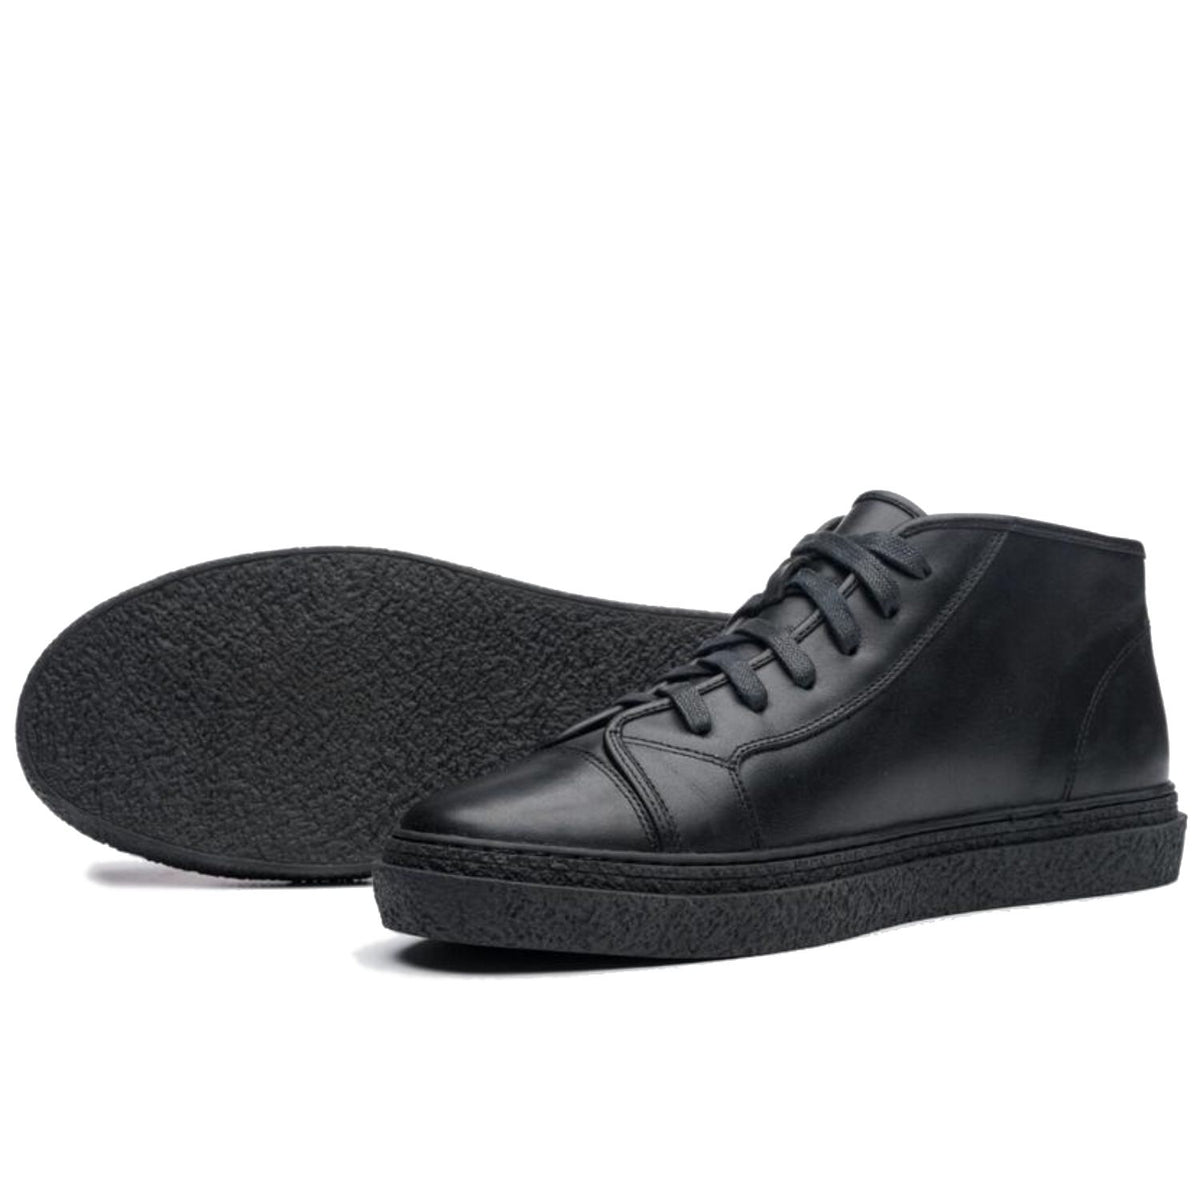 ONTO Kogi - Black Leather Sneaker